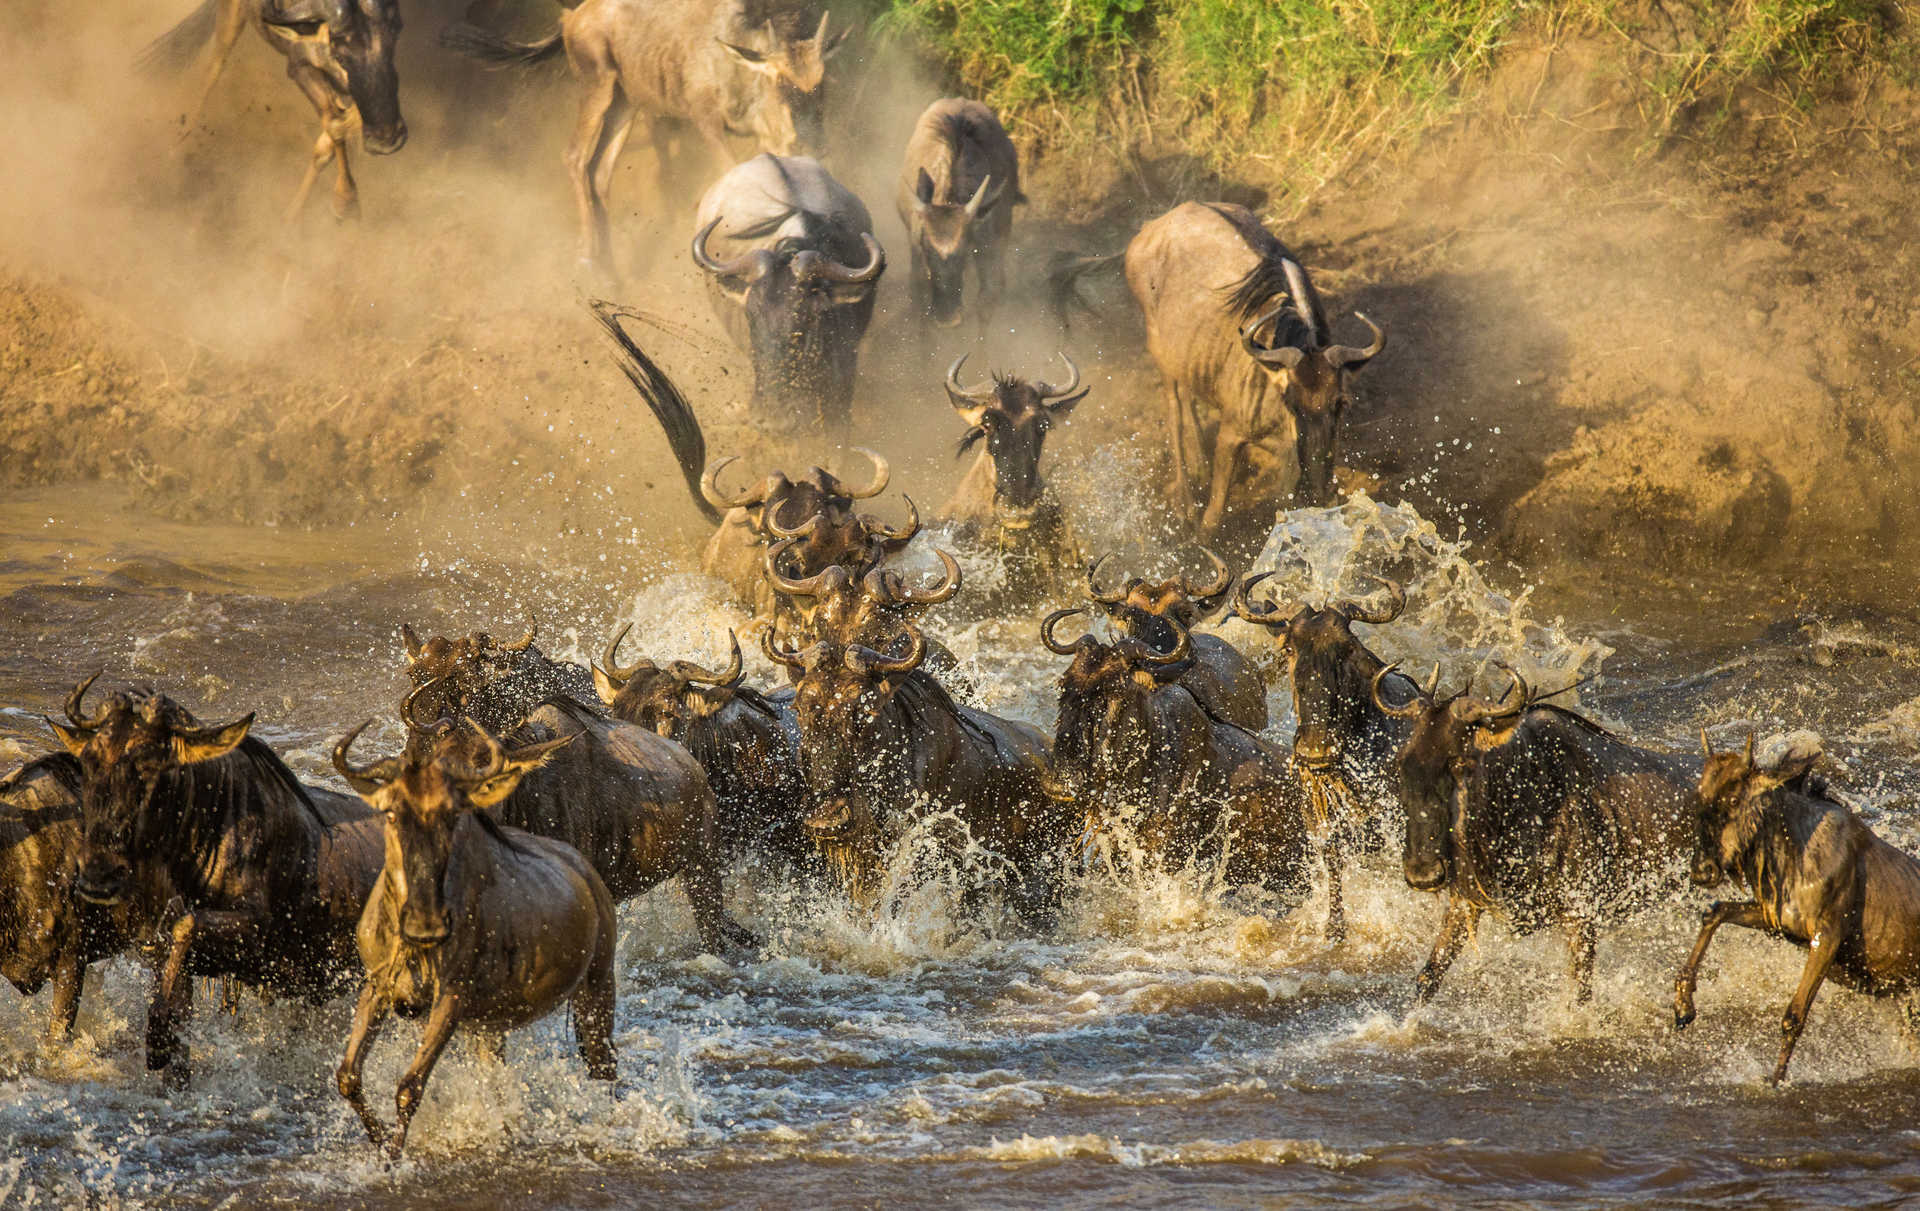 La fameuse traversée de la Rivière Mara par les gnous entre Tanzanie et Kenya